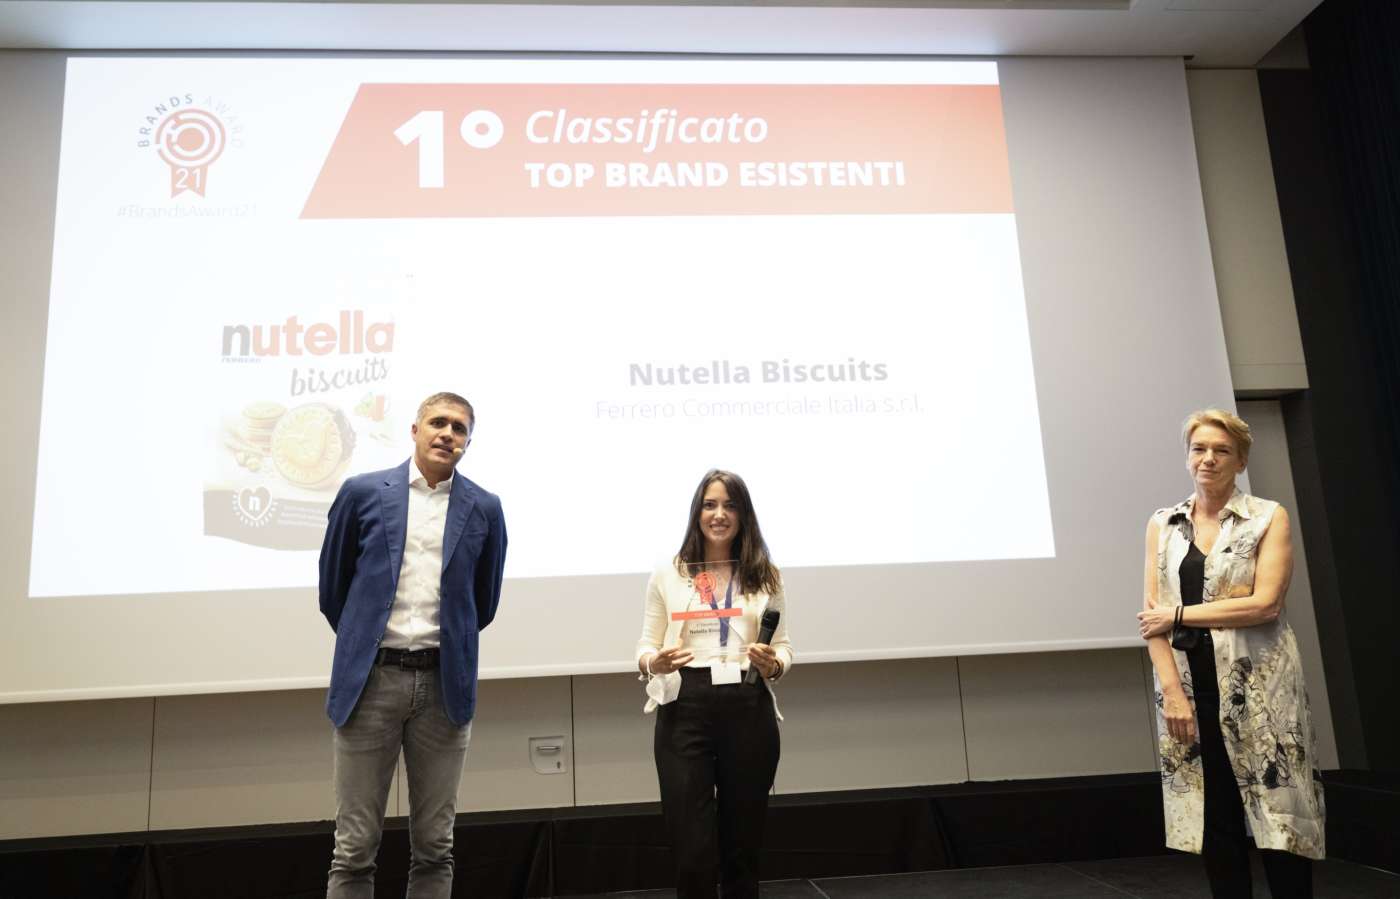 Brands Award 2021 Top Brand esistenti 1 classificato Nutella Biscuits